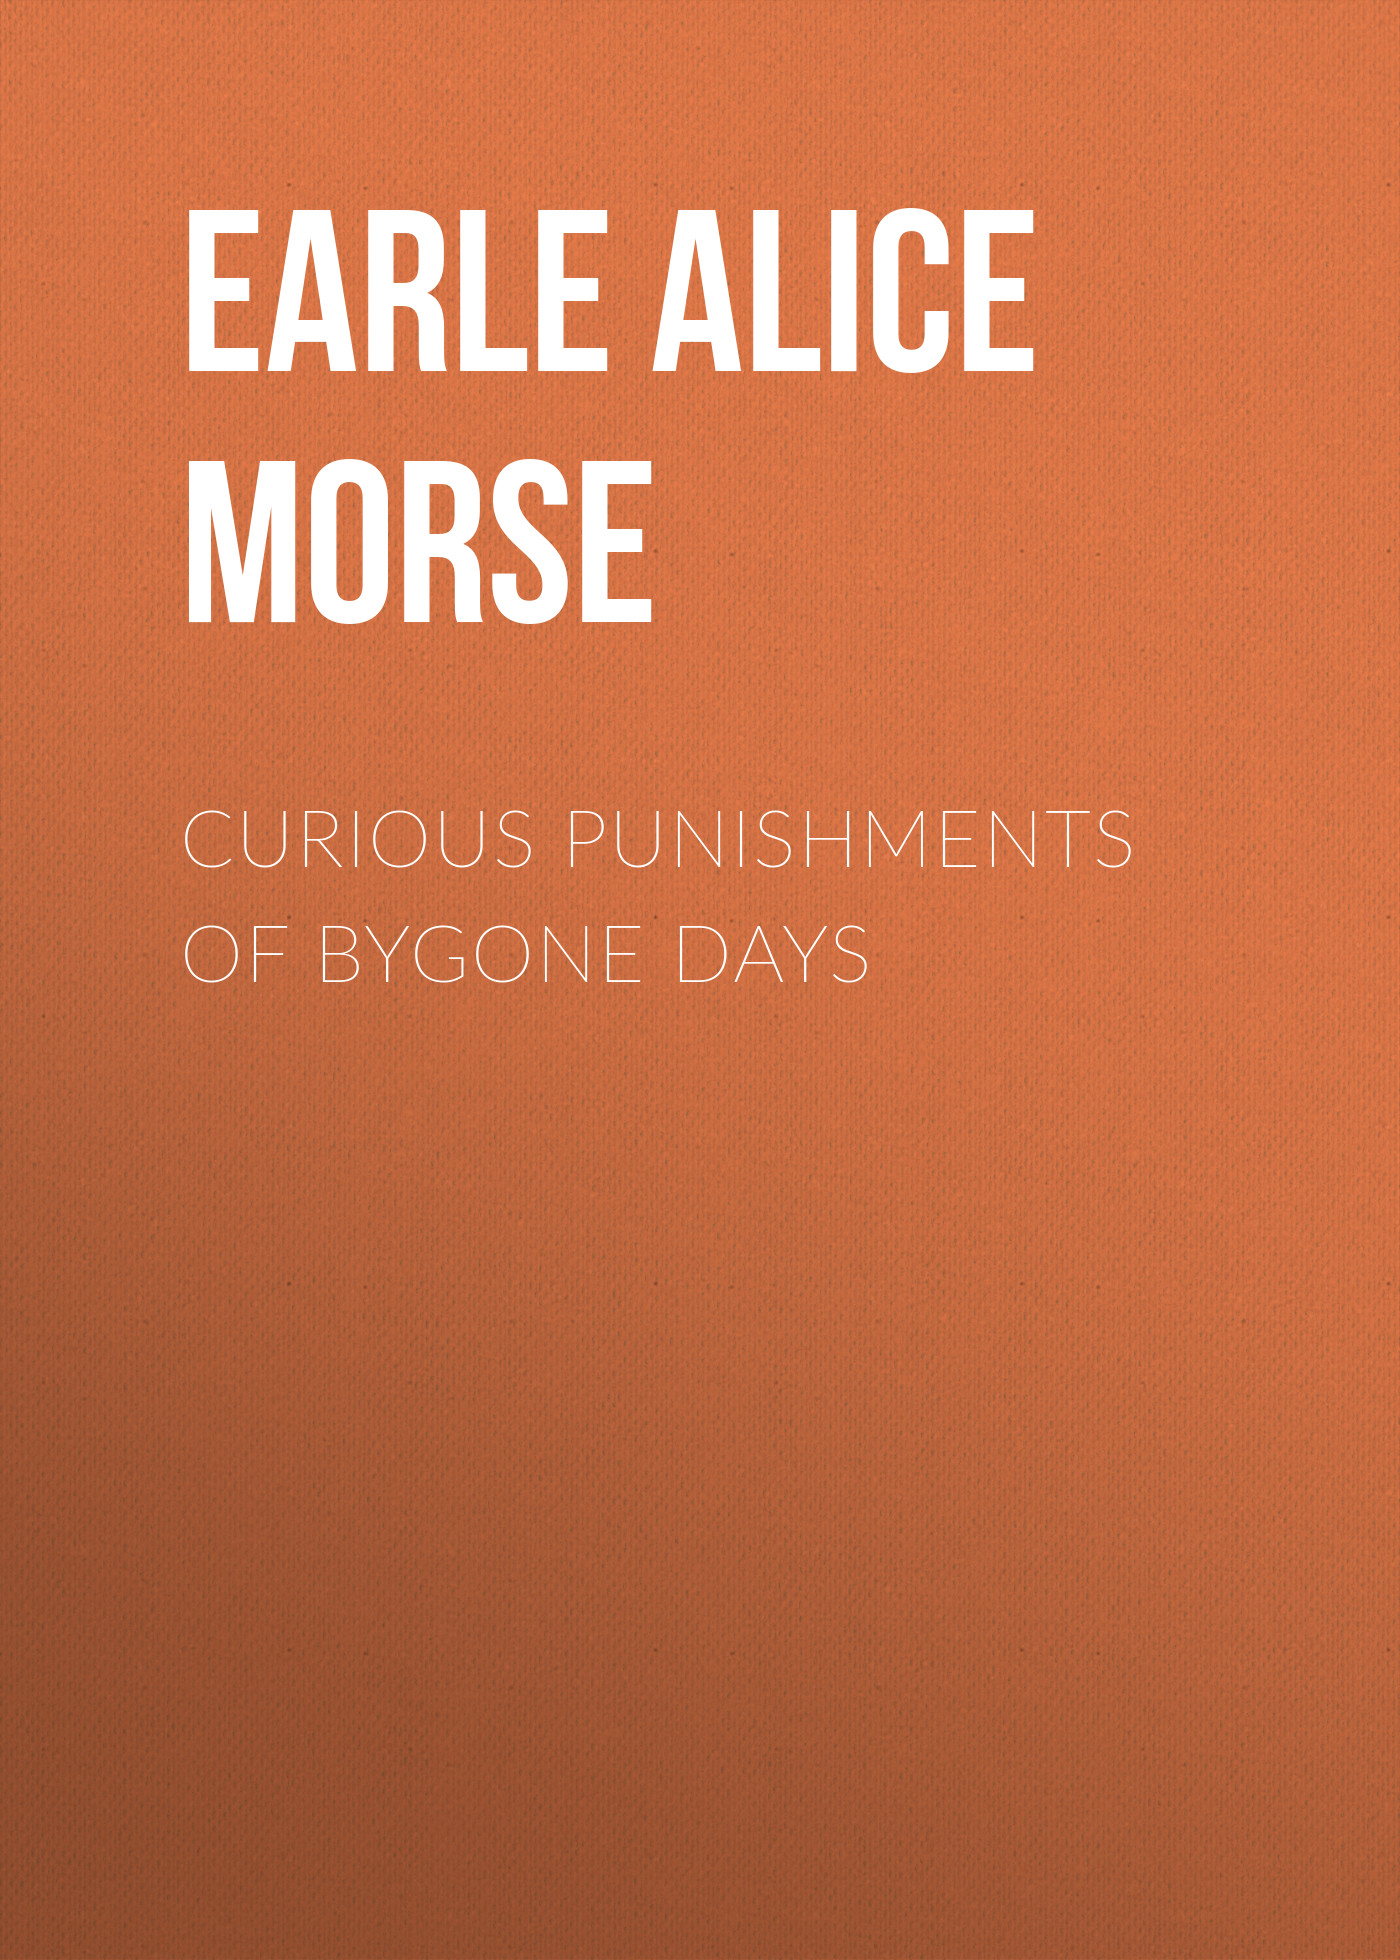 Книга Curious Punishments of Bygone Days из серии , созданная Alice Earle, может относится к жанру Зарубежная старинная литература, Зарубежная классика. Стоимость электронной книги Curious Punishments of Bygone Days с идентификатором 24620093 составляет 0 руб.